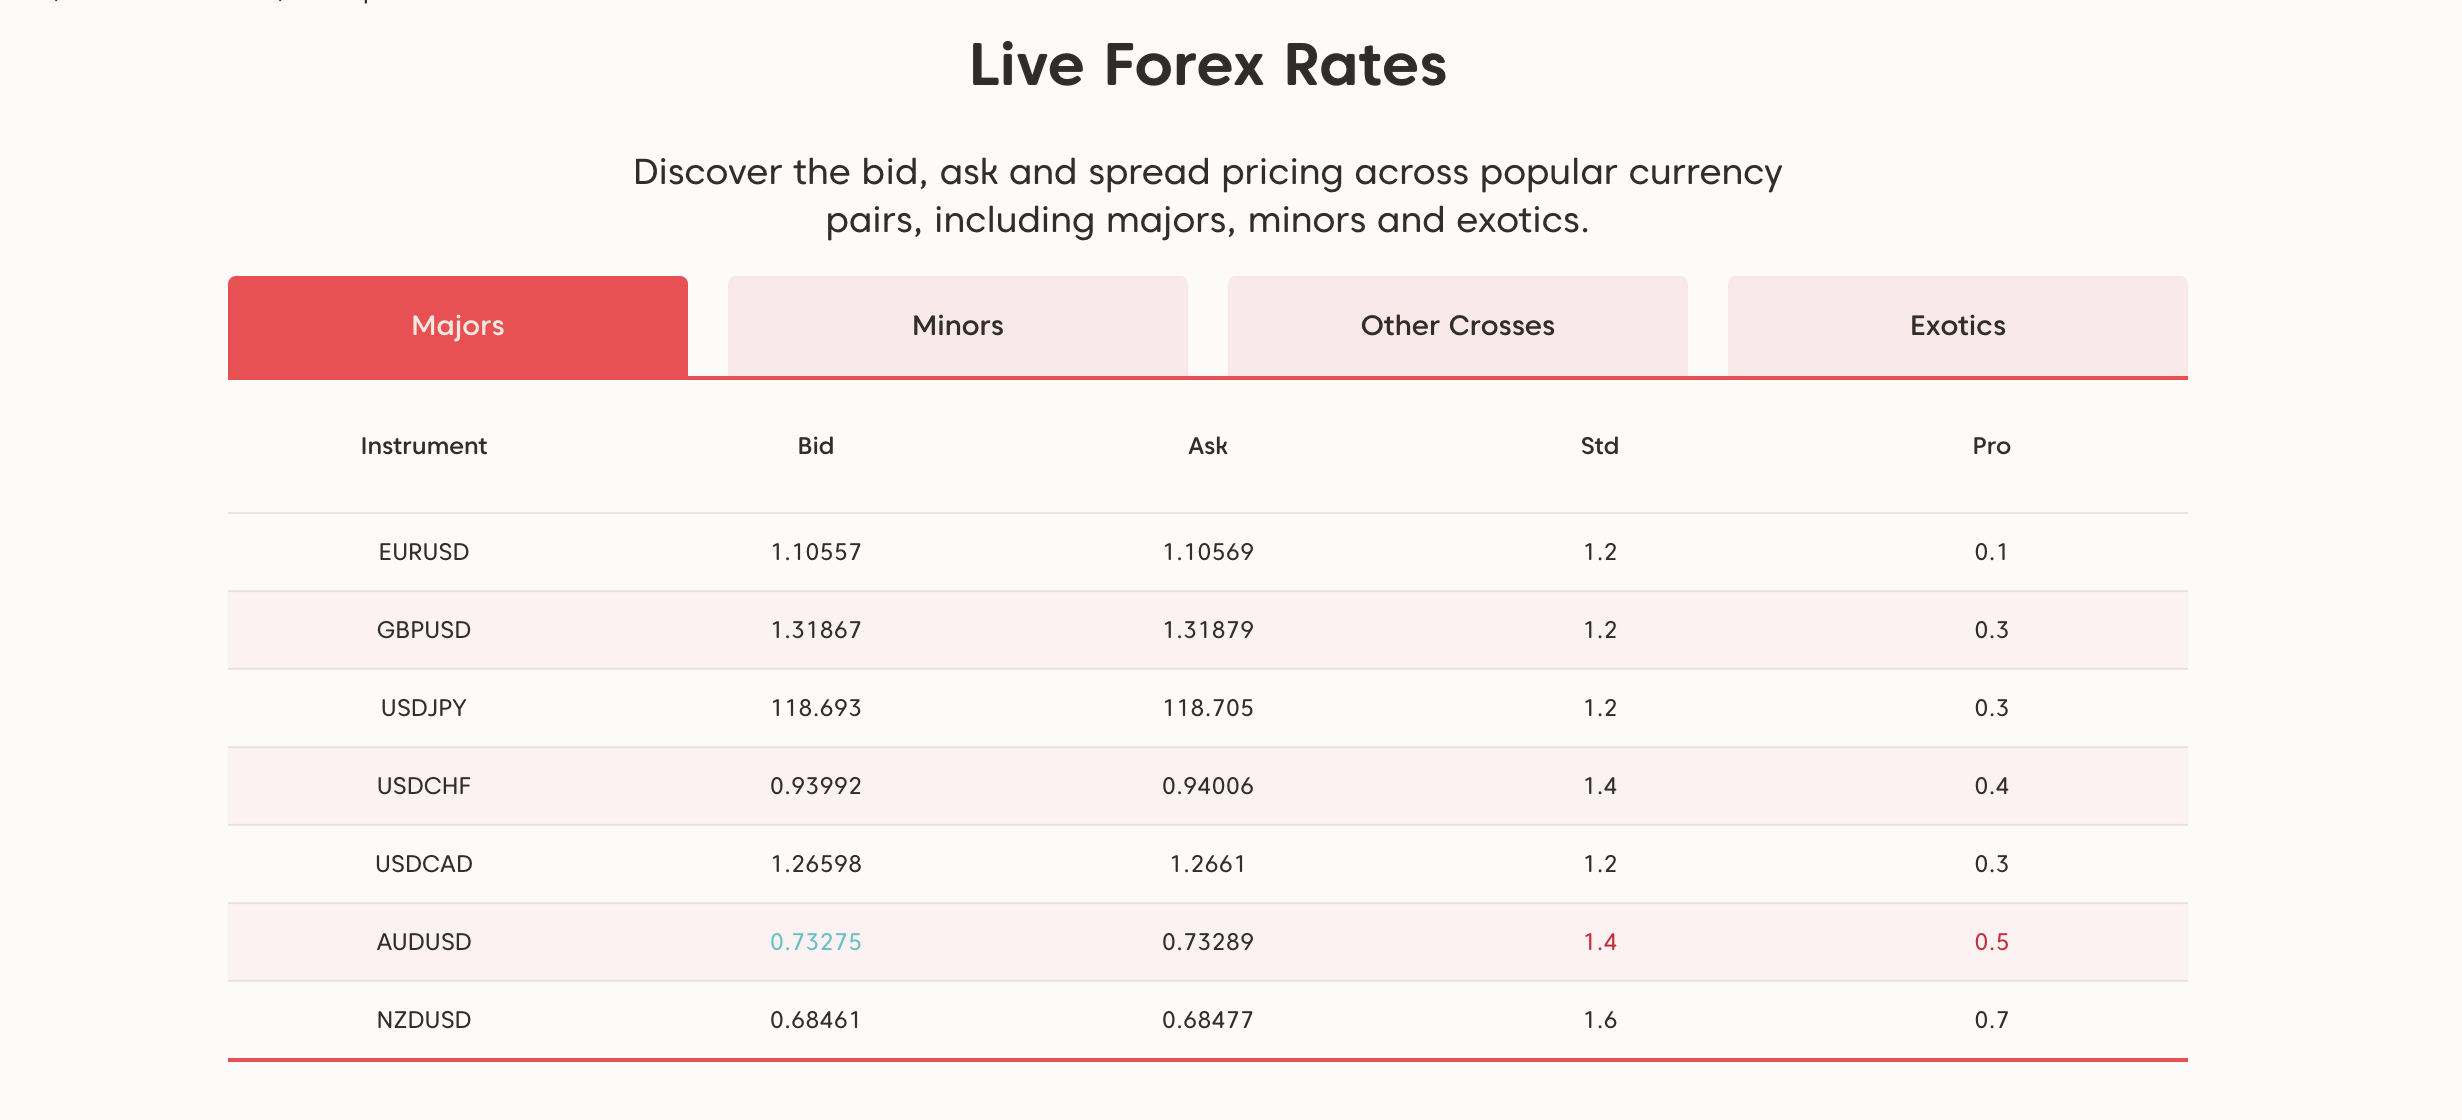 Στο AxiTrader μπορείτε να δείτε τα δεδομένα της αγοράς σε πραγματικό χρόνο, συμπεριλαμβανομένων των spreads.